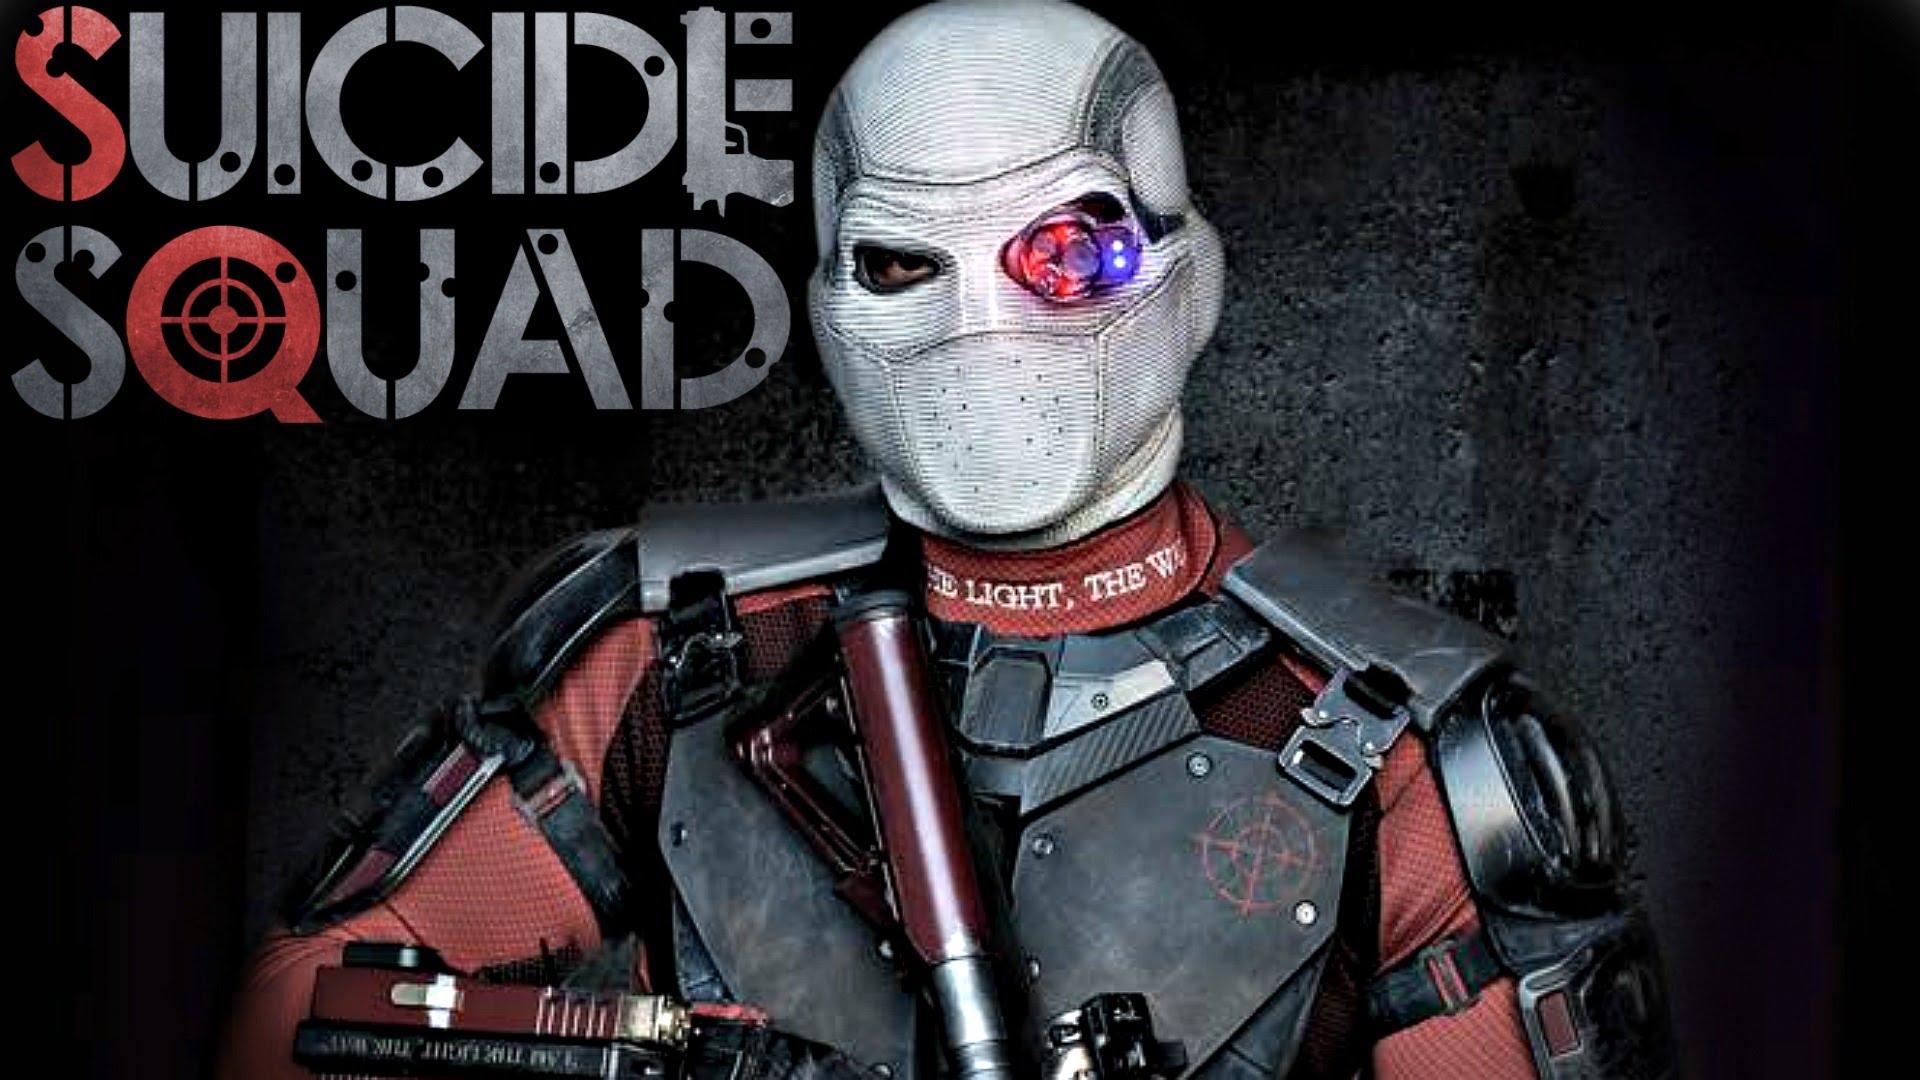 Suicide Squad Wallpaper - Suicide Squad Wallpaper Deadshot - HD Wallpaper 